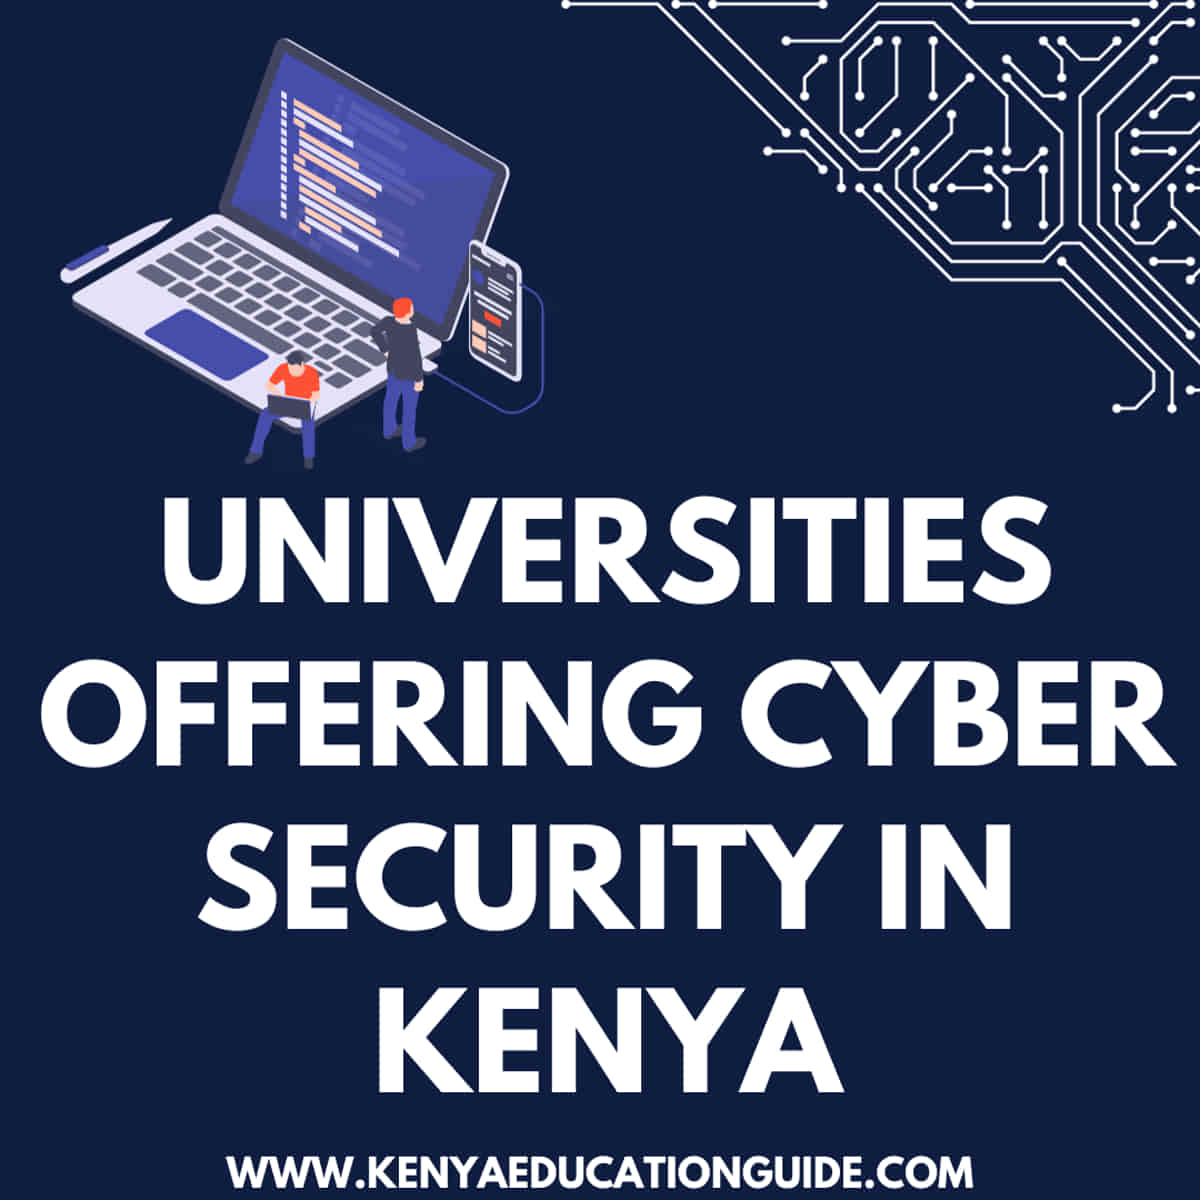 Universities offering cyber security in Kenya